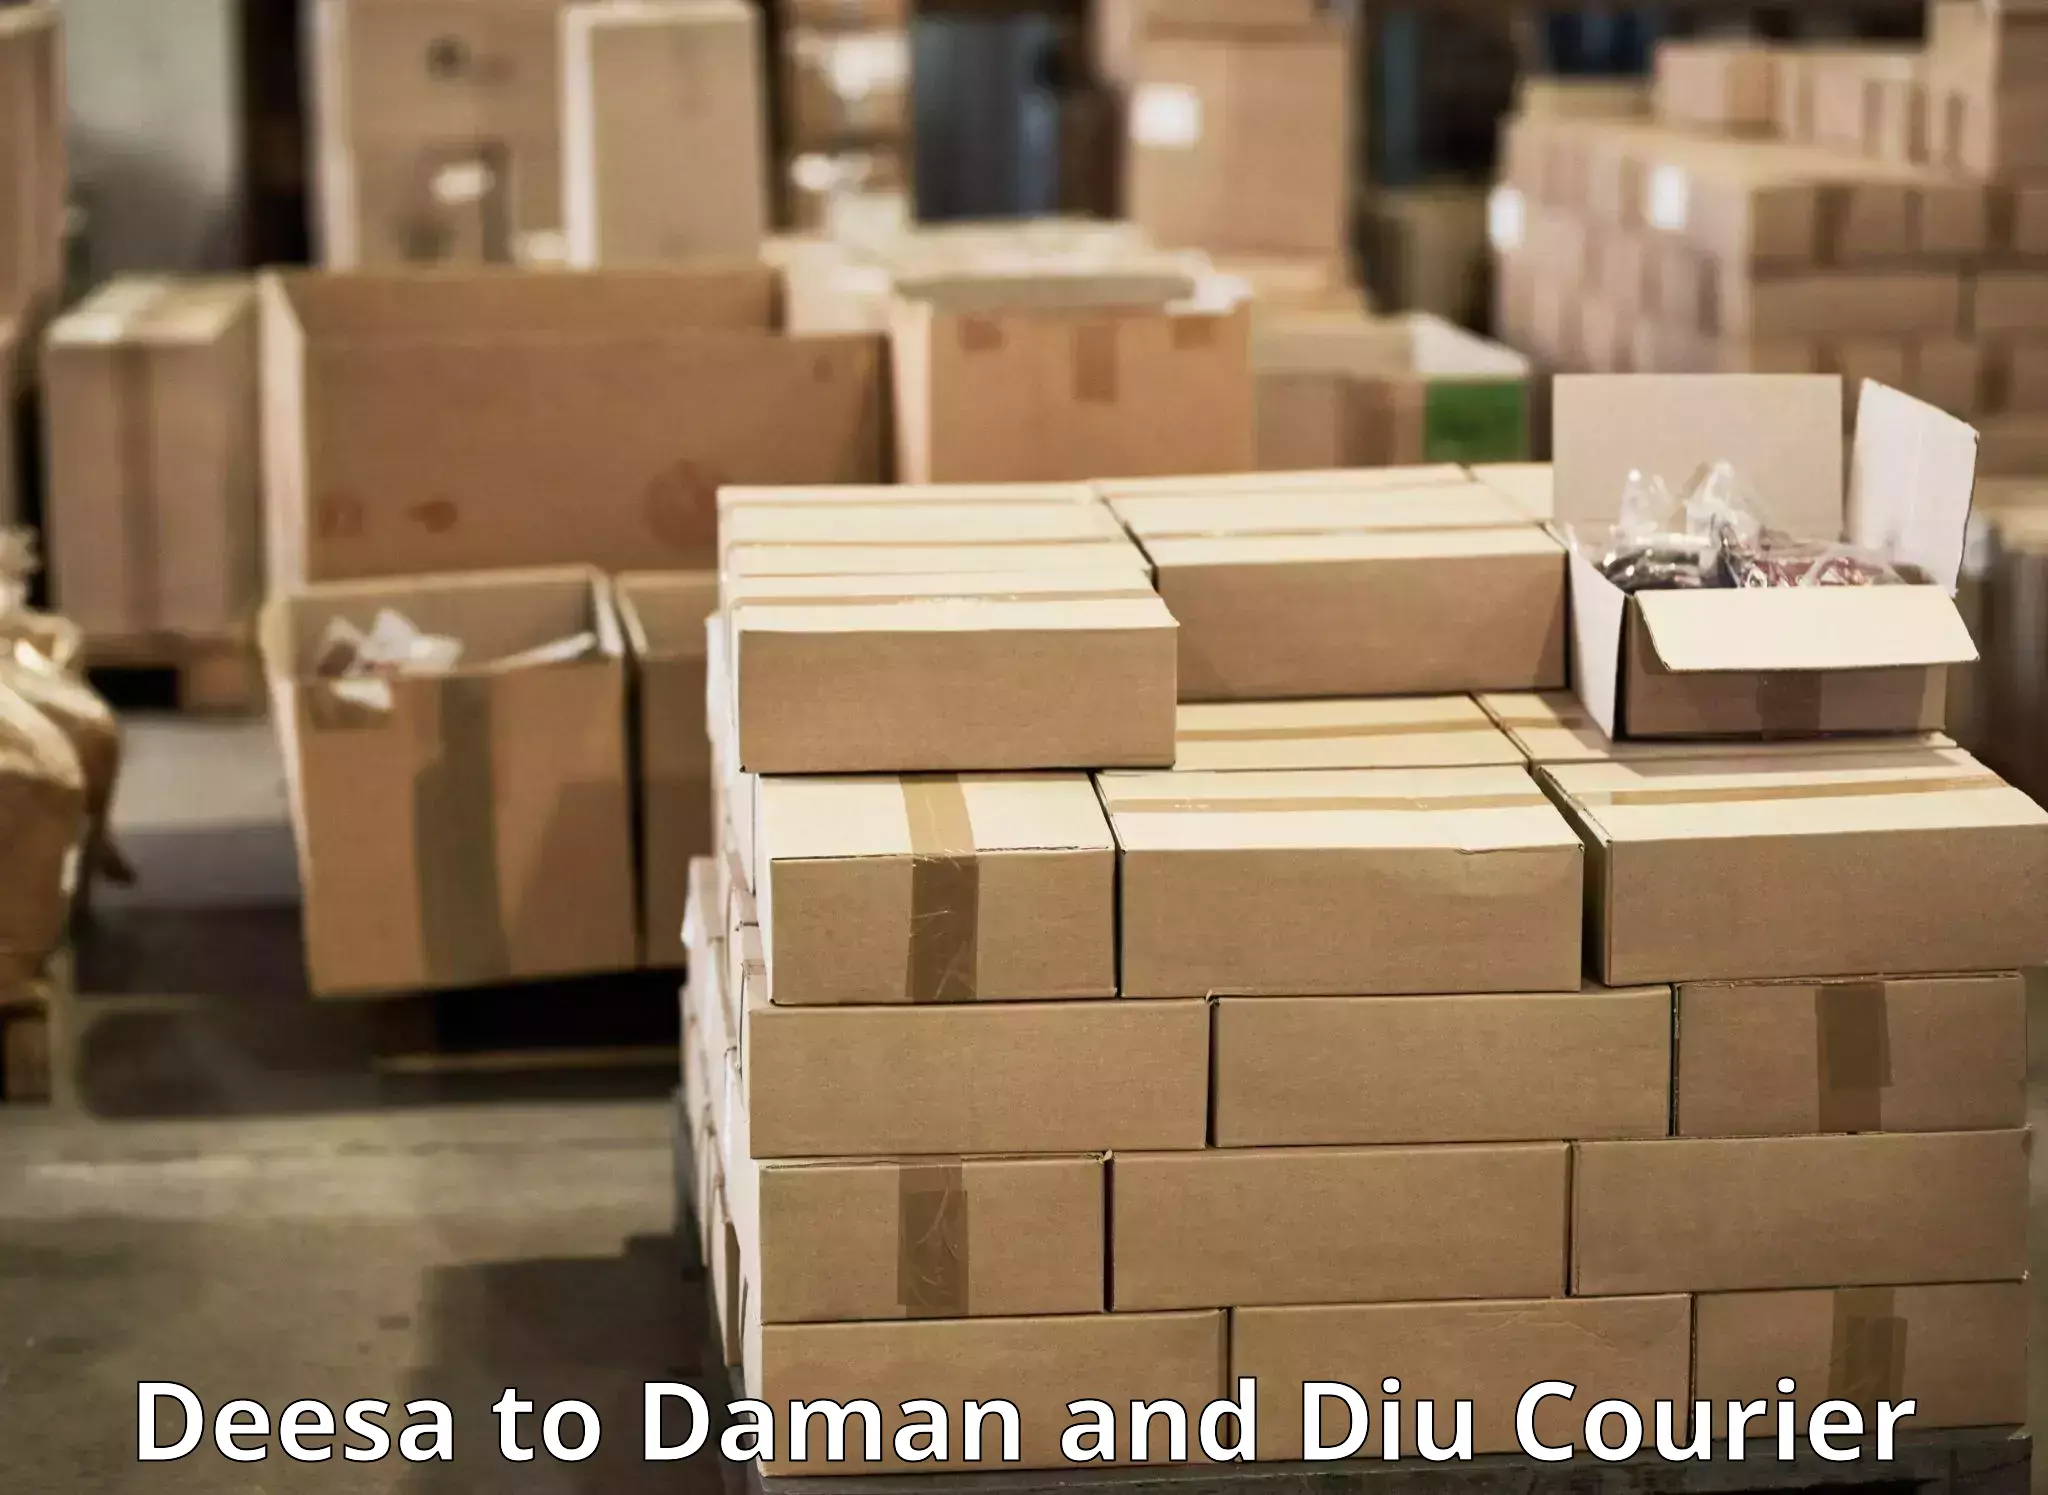 Discount courier rates Deesa to Daman